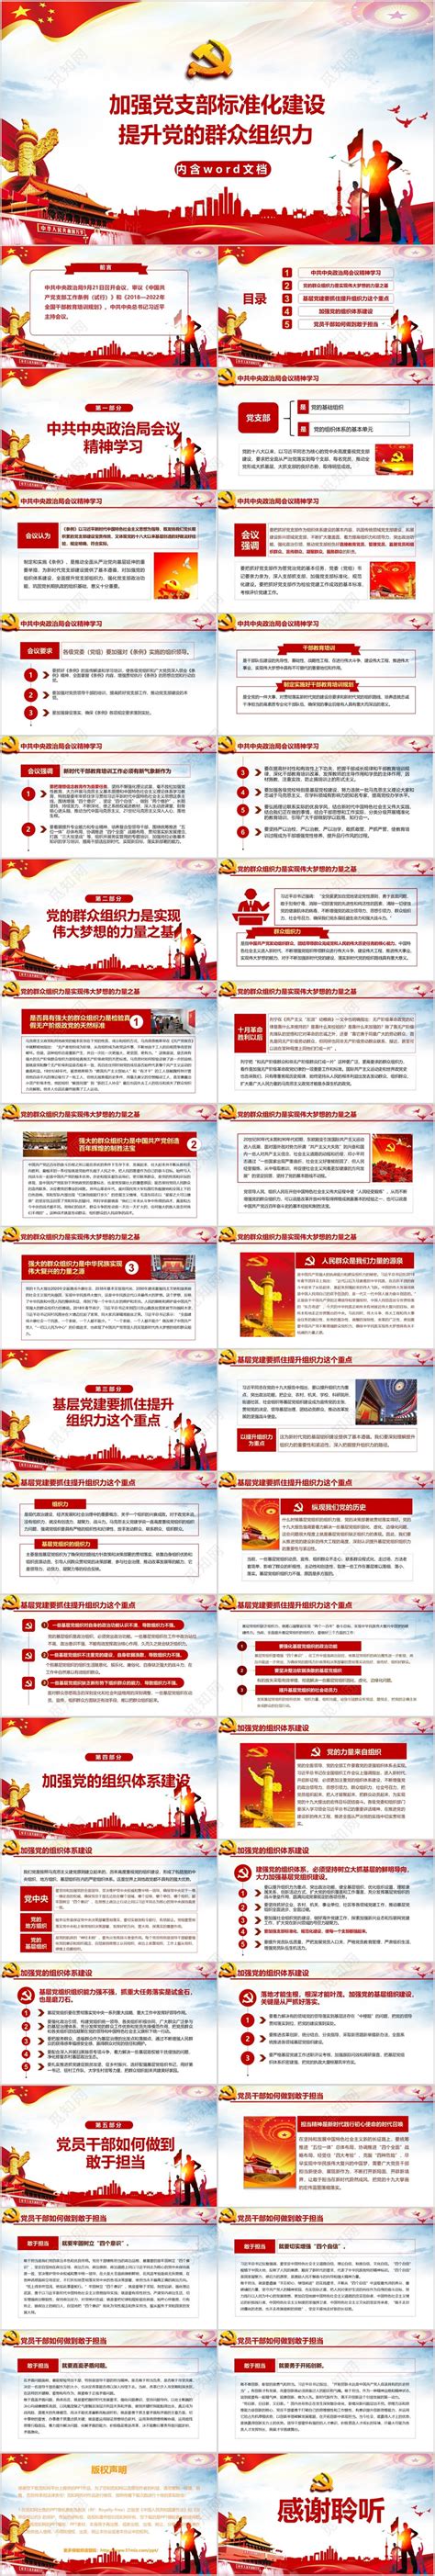 基层党组织标准化建设实施方案ppt下载_红动中国